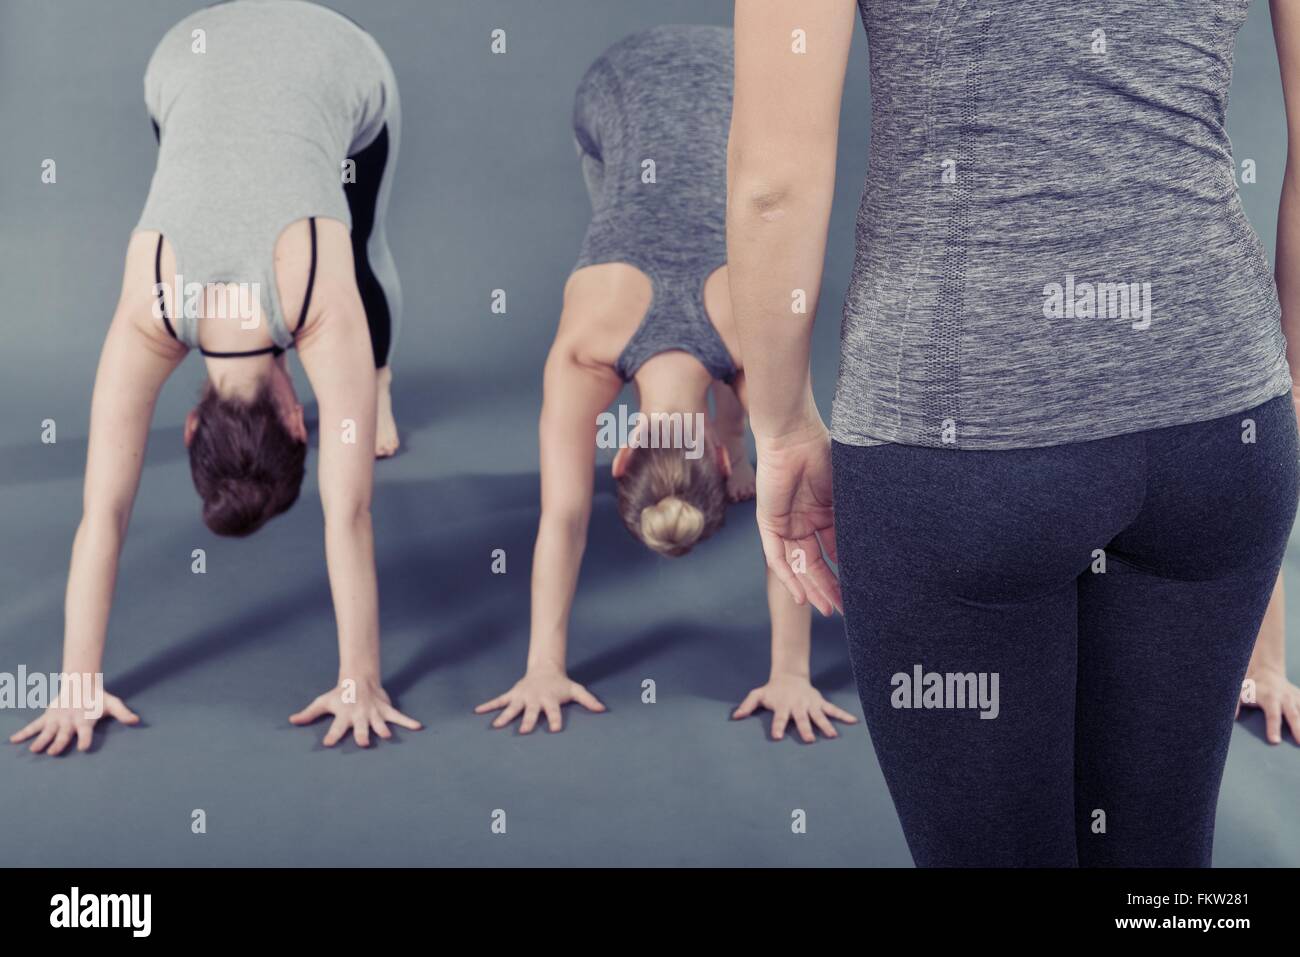 Las mujeres jóvenes practicando yoga, fondo gris Foto de stock